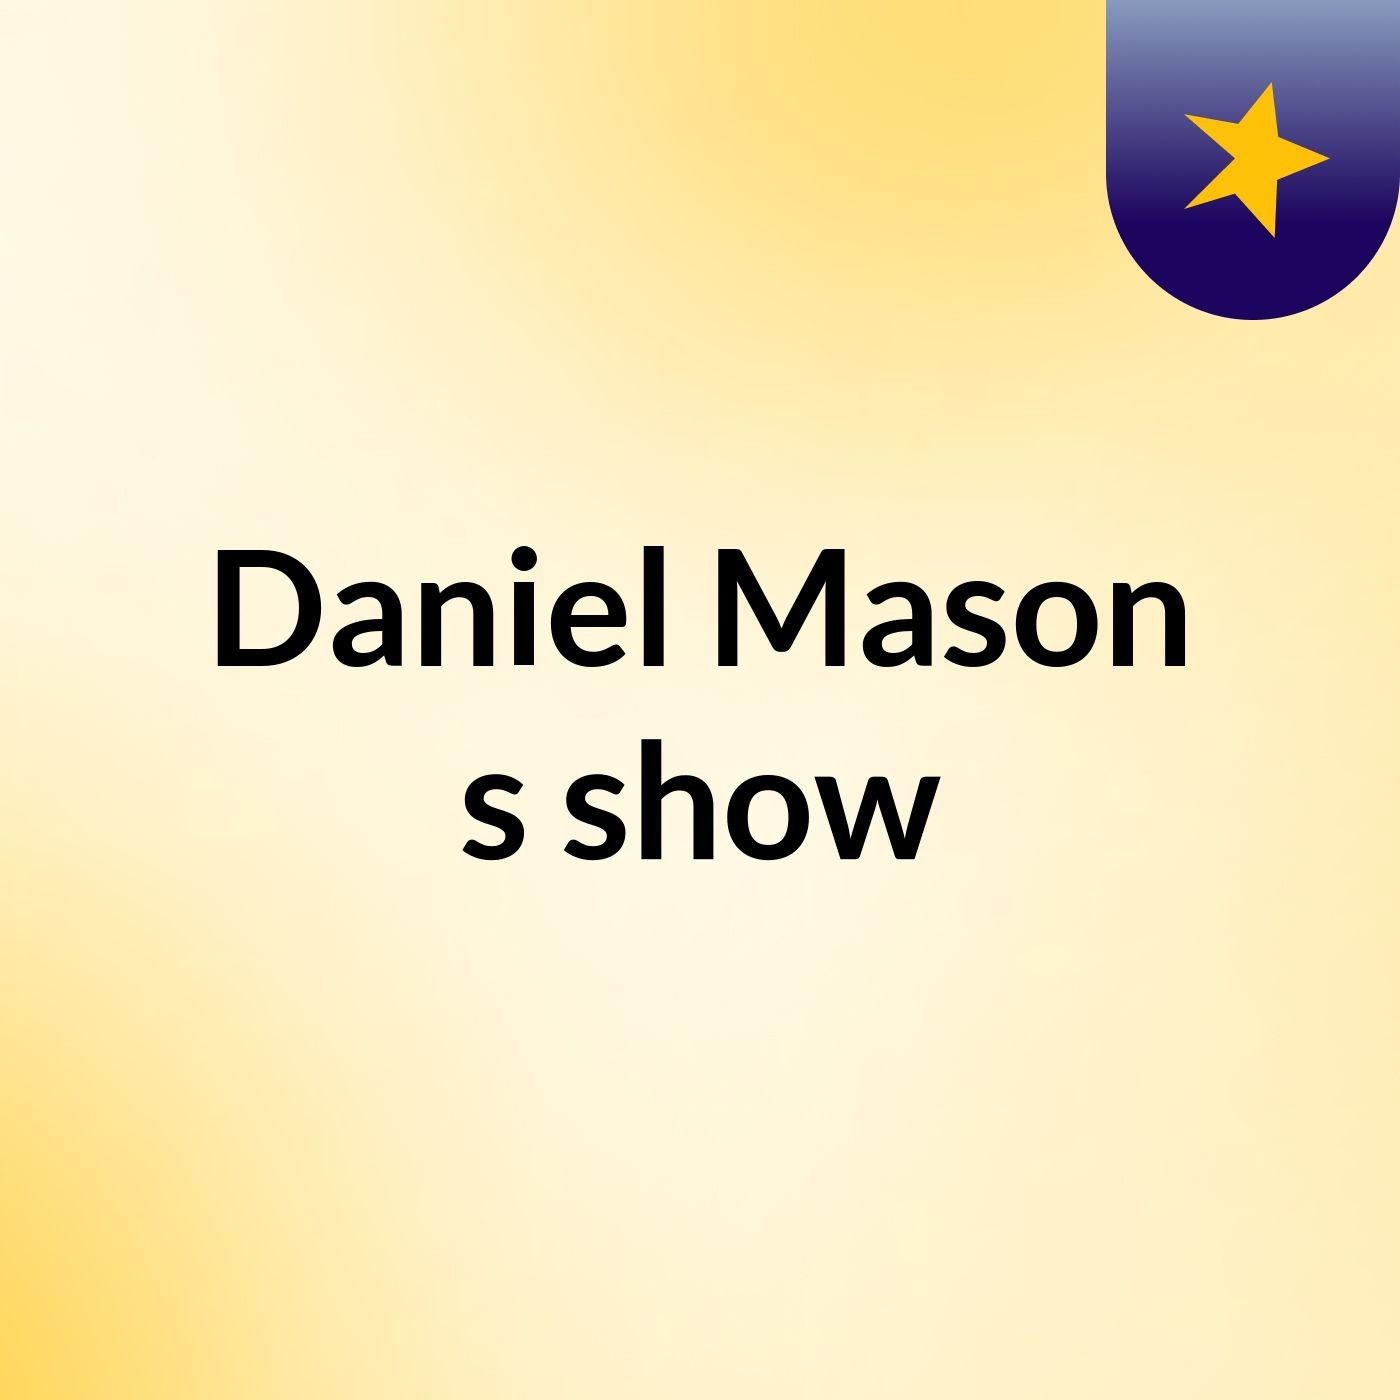 Daniel Mason's show